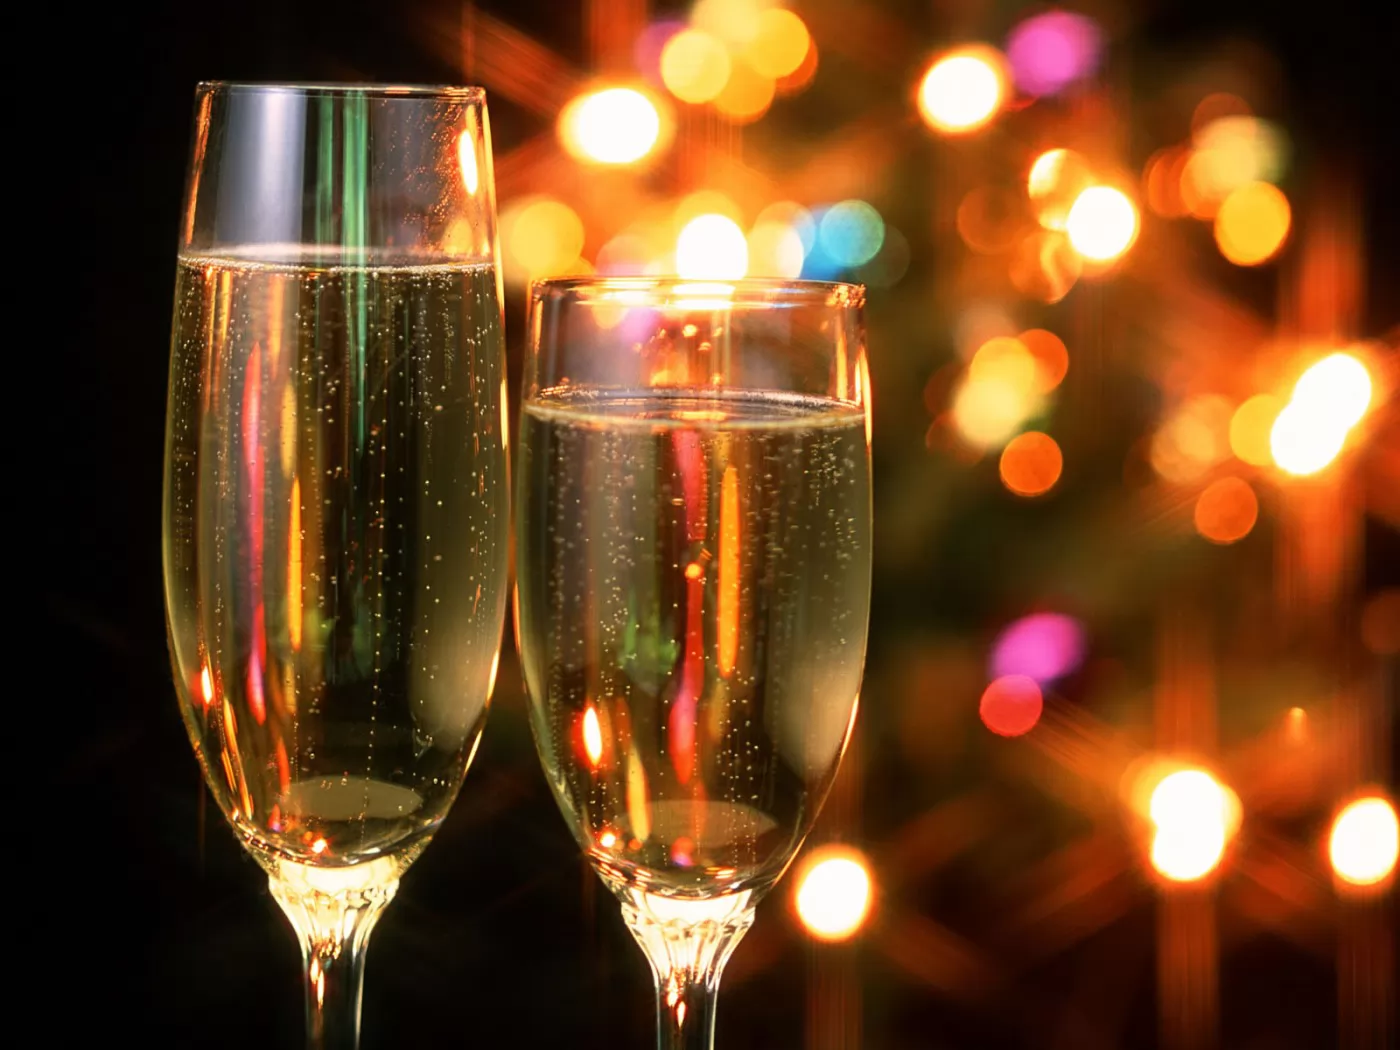 Бокалы с шампанским, золотистое, клипарт, напитки, Новый год, праздники х